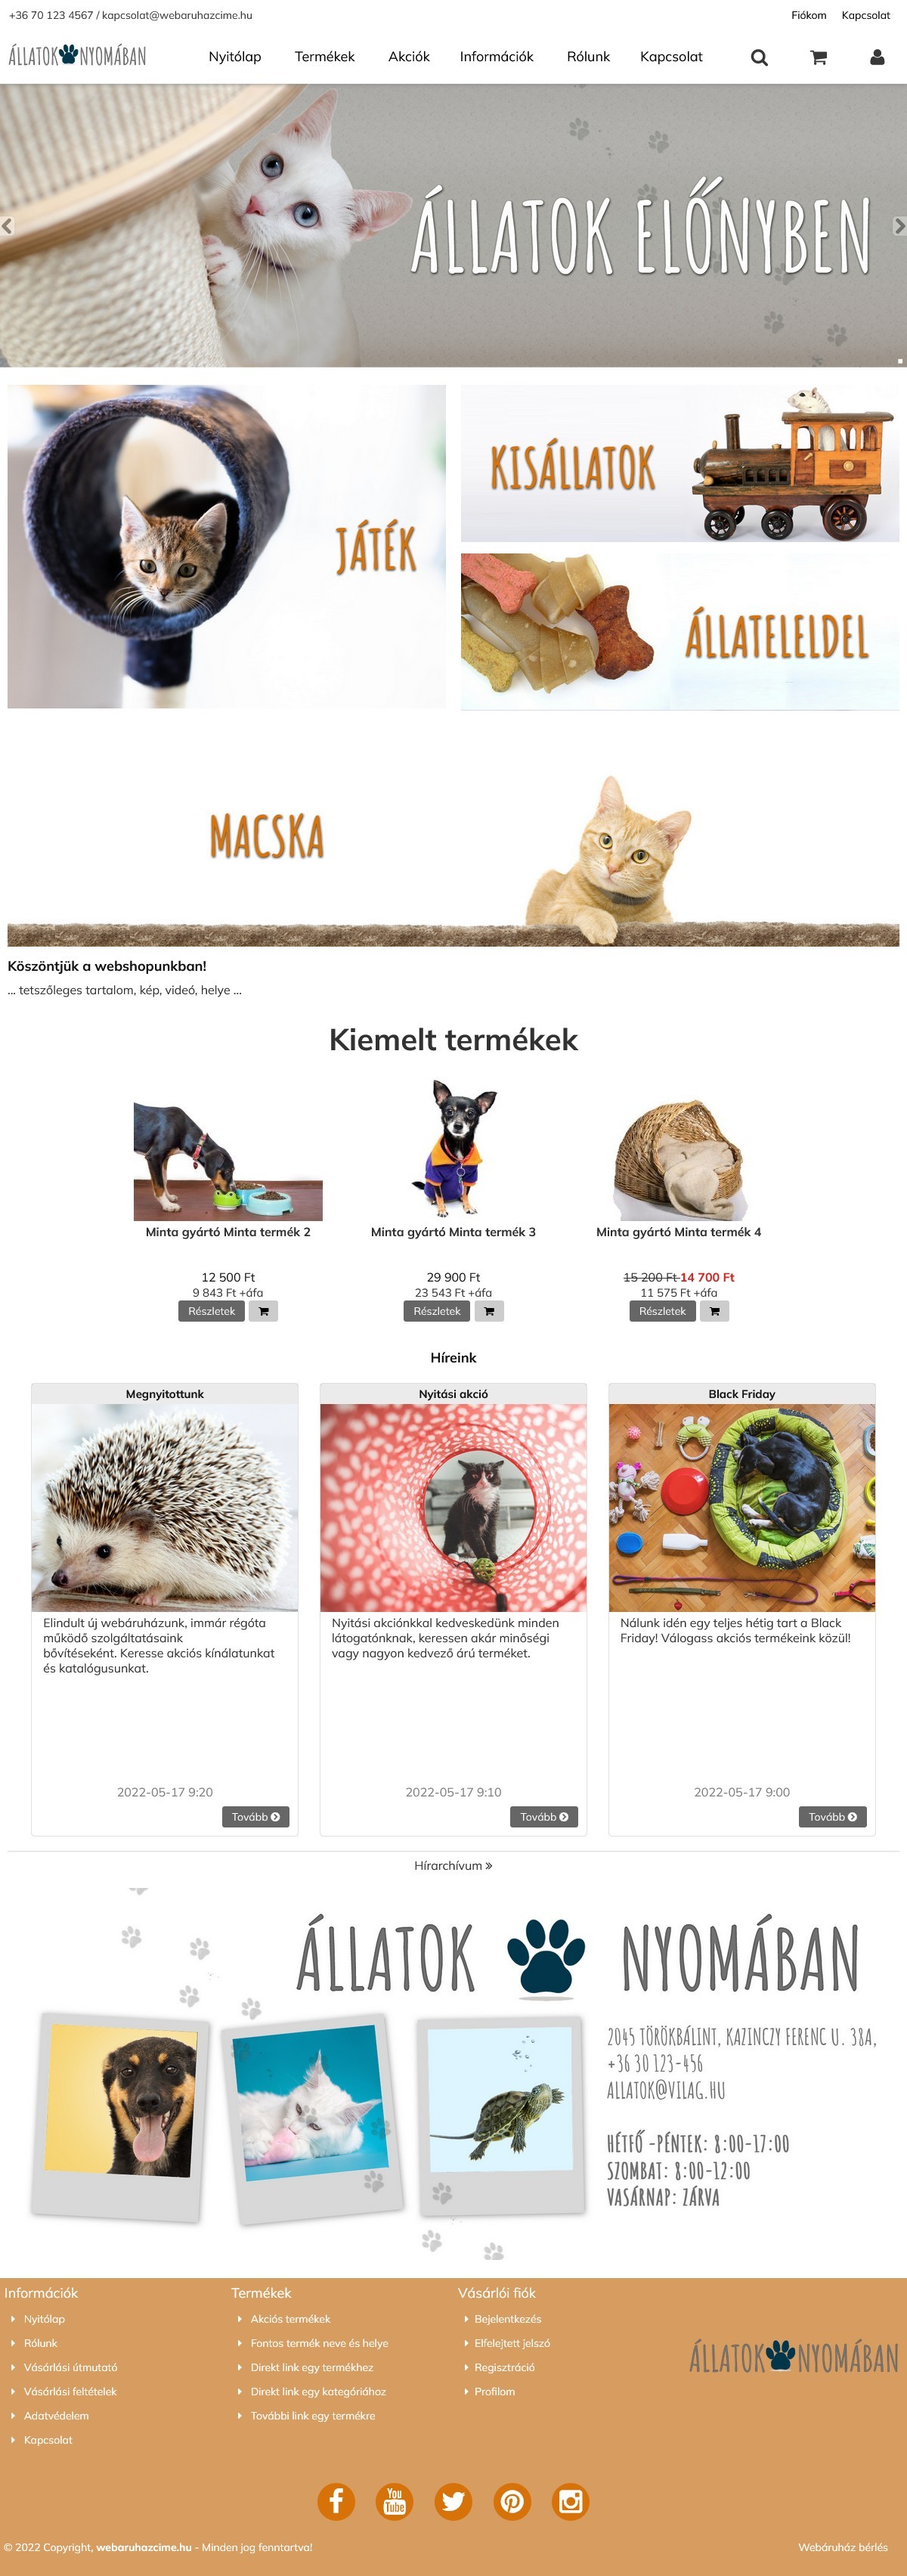 Állatvilág webáruház webdesign, arculat